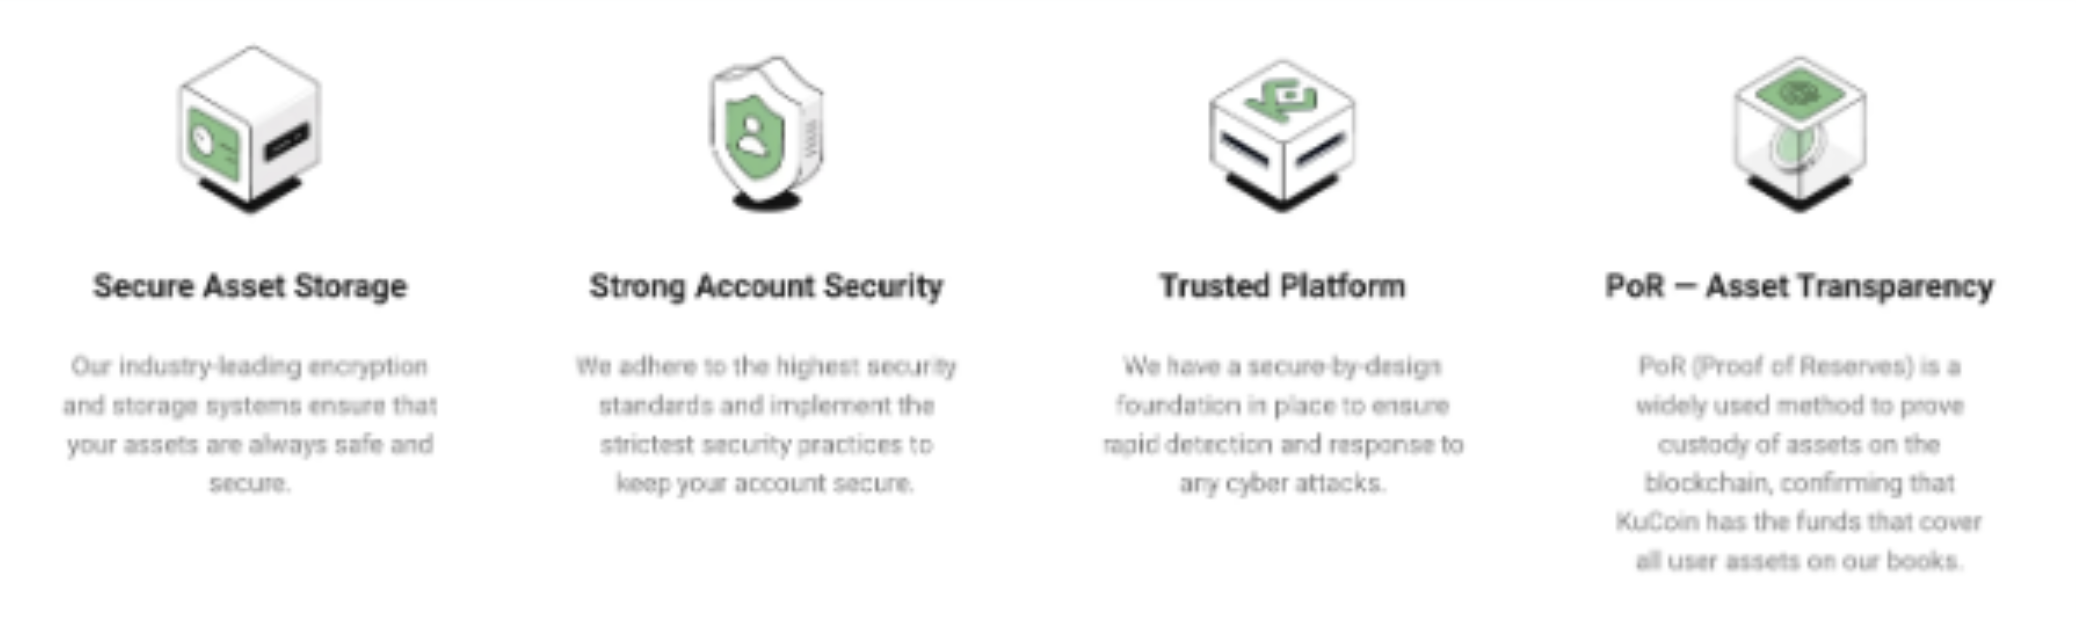 Kucoin platform security